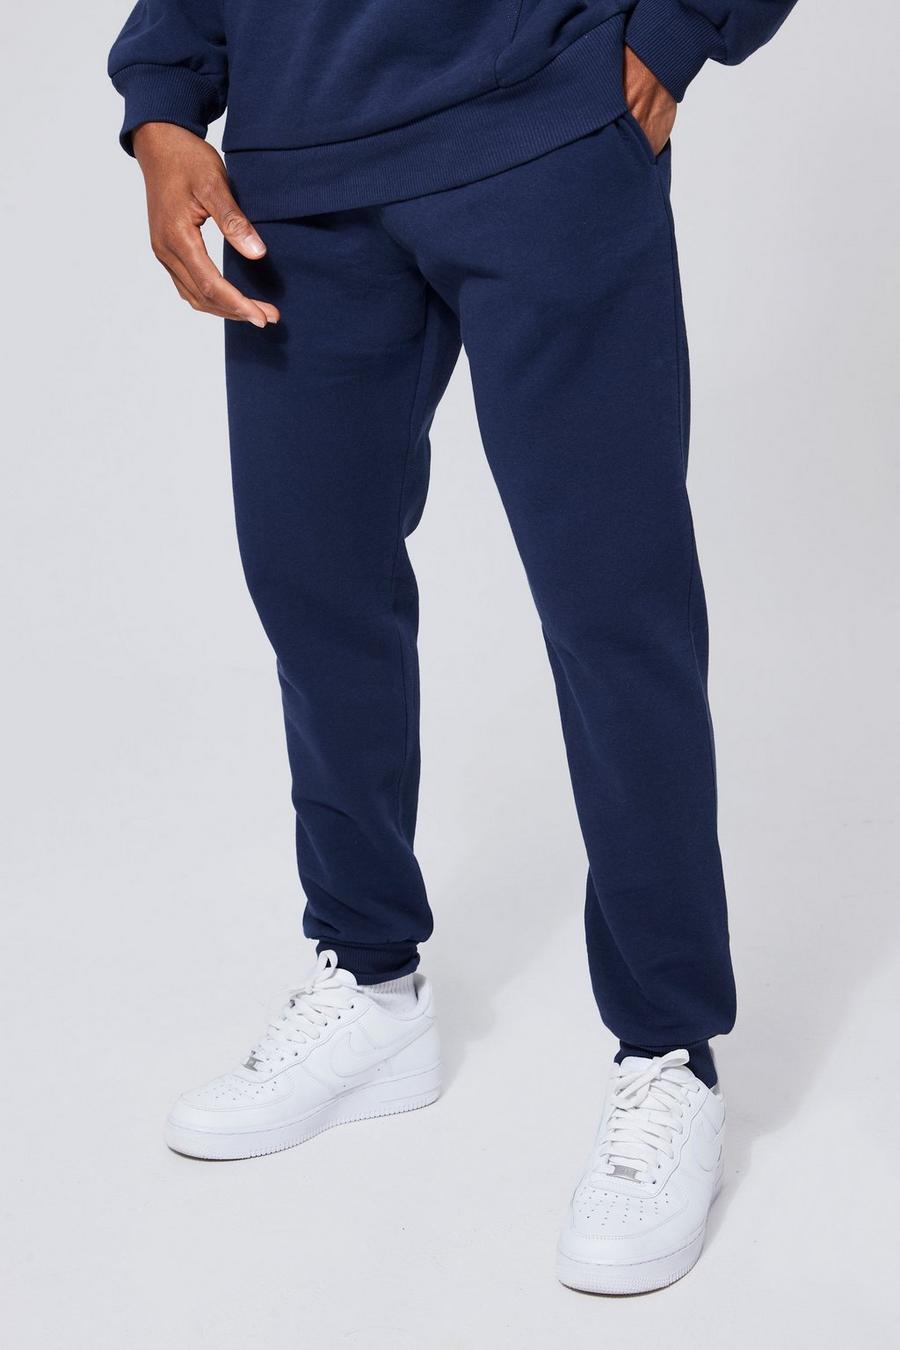 Pantalón deportivo básico pitillo, Navy azul marino